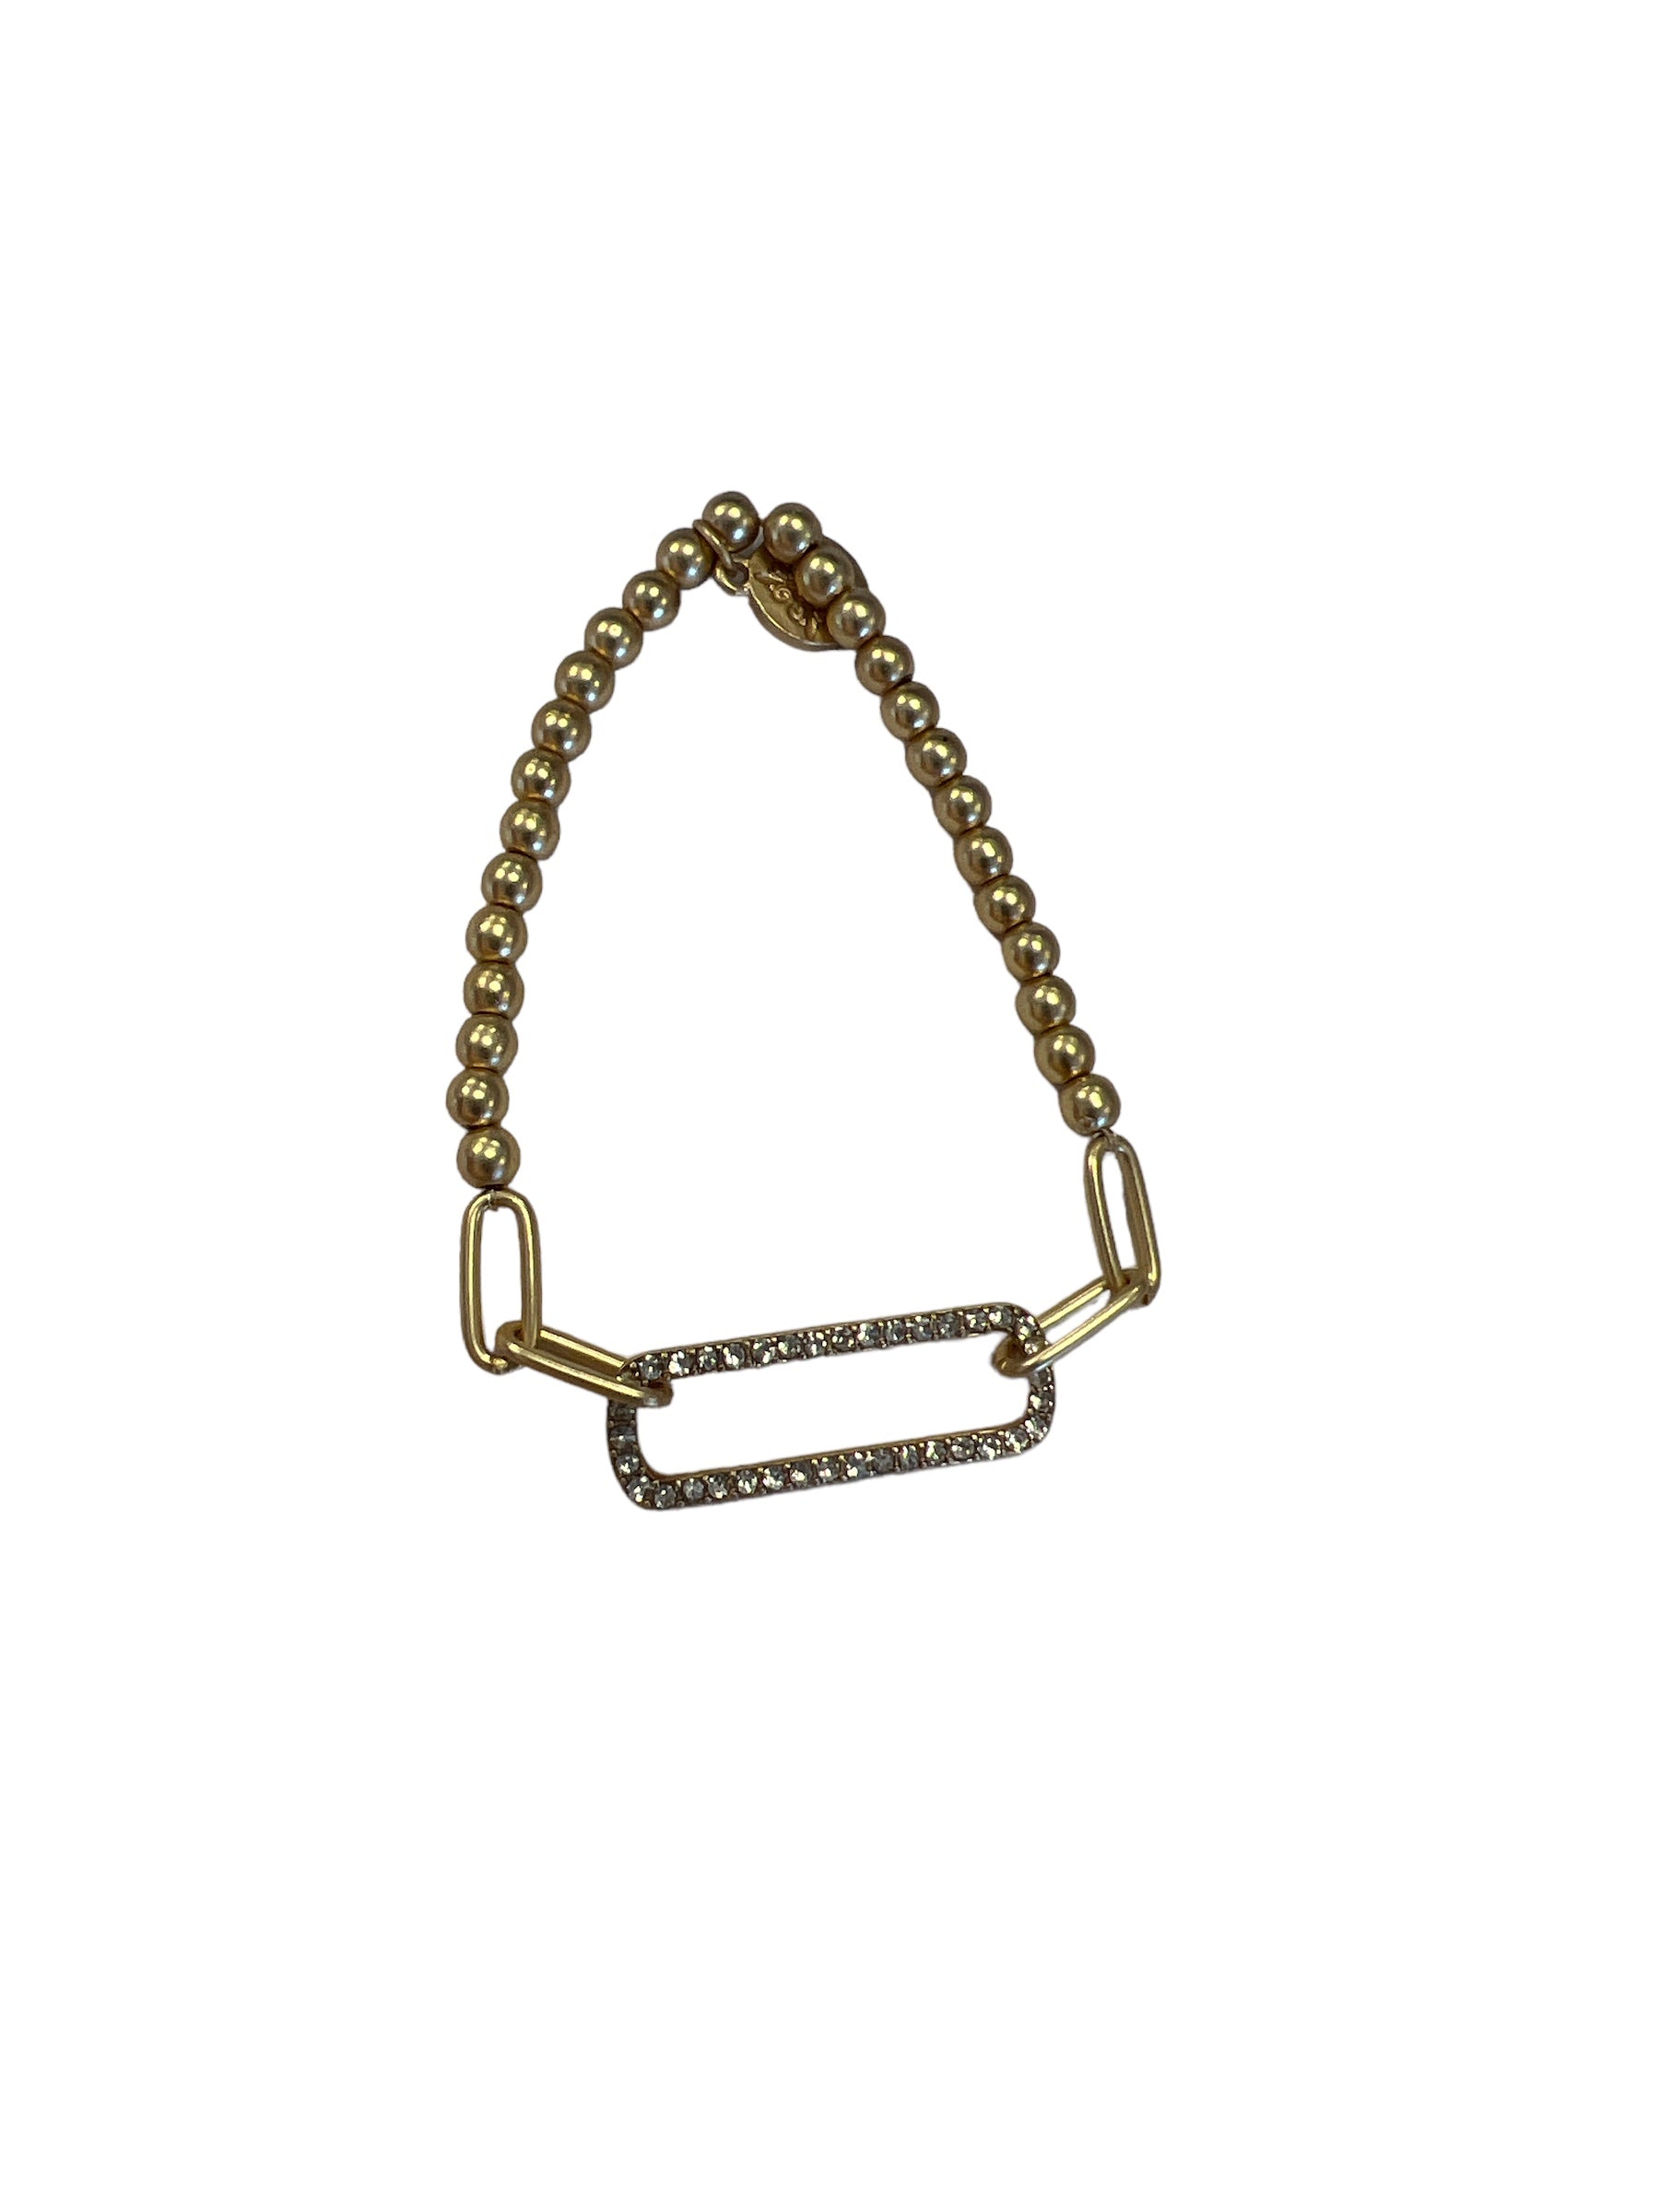 Gold Oval Link Bracelet-410 Jewelry-Simply Stylish Boutique-Simply Stylish Boutique | Women’s & Kid’s Fashion | Paducah, KY